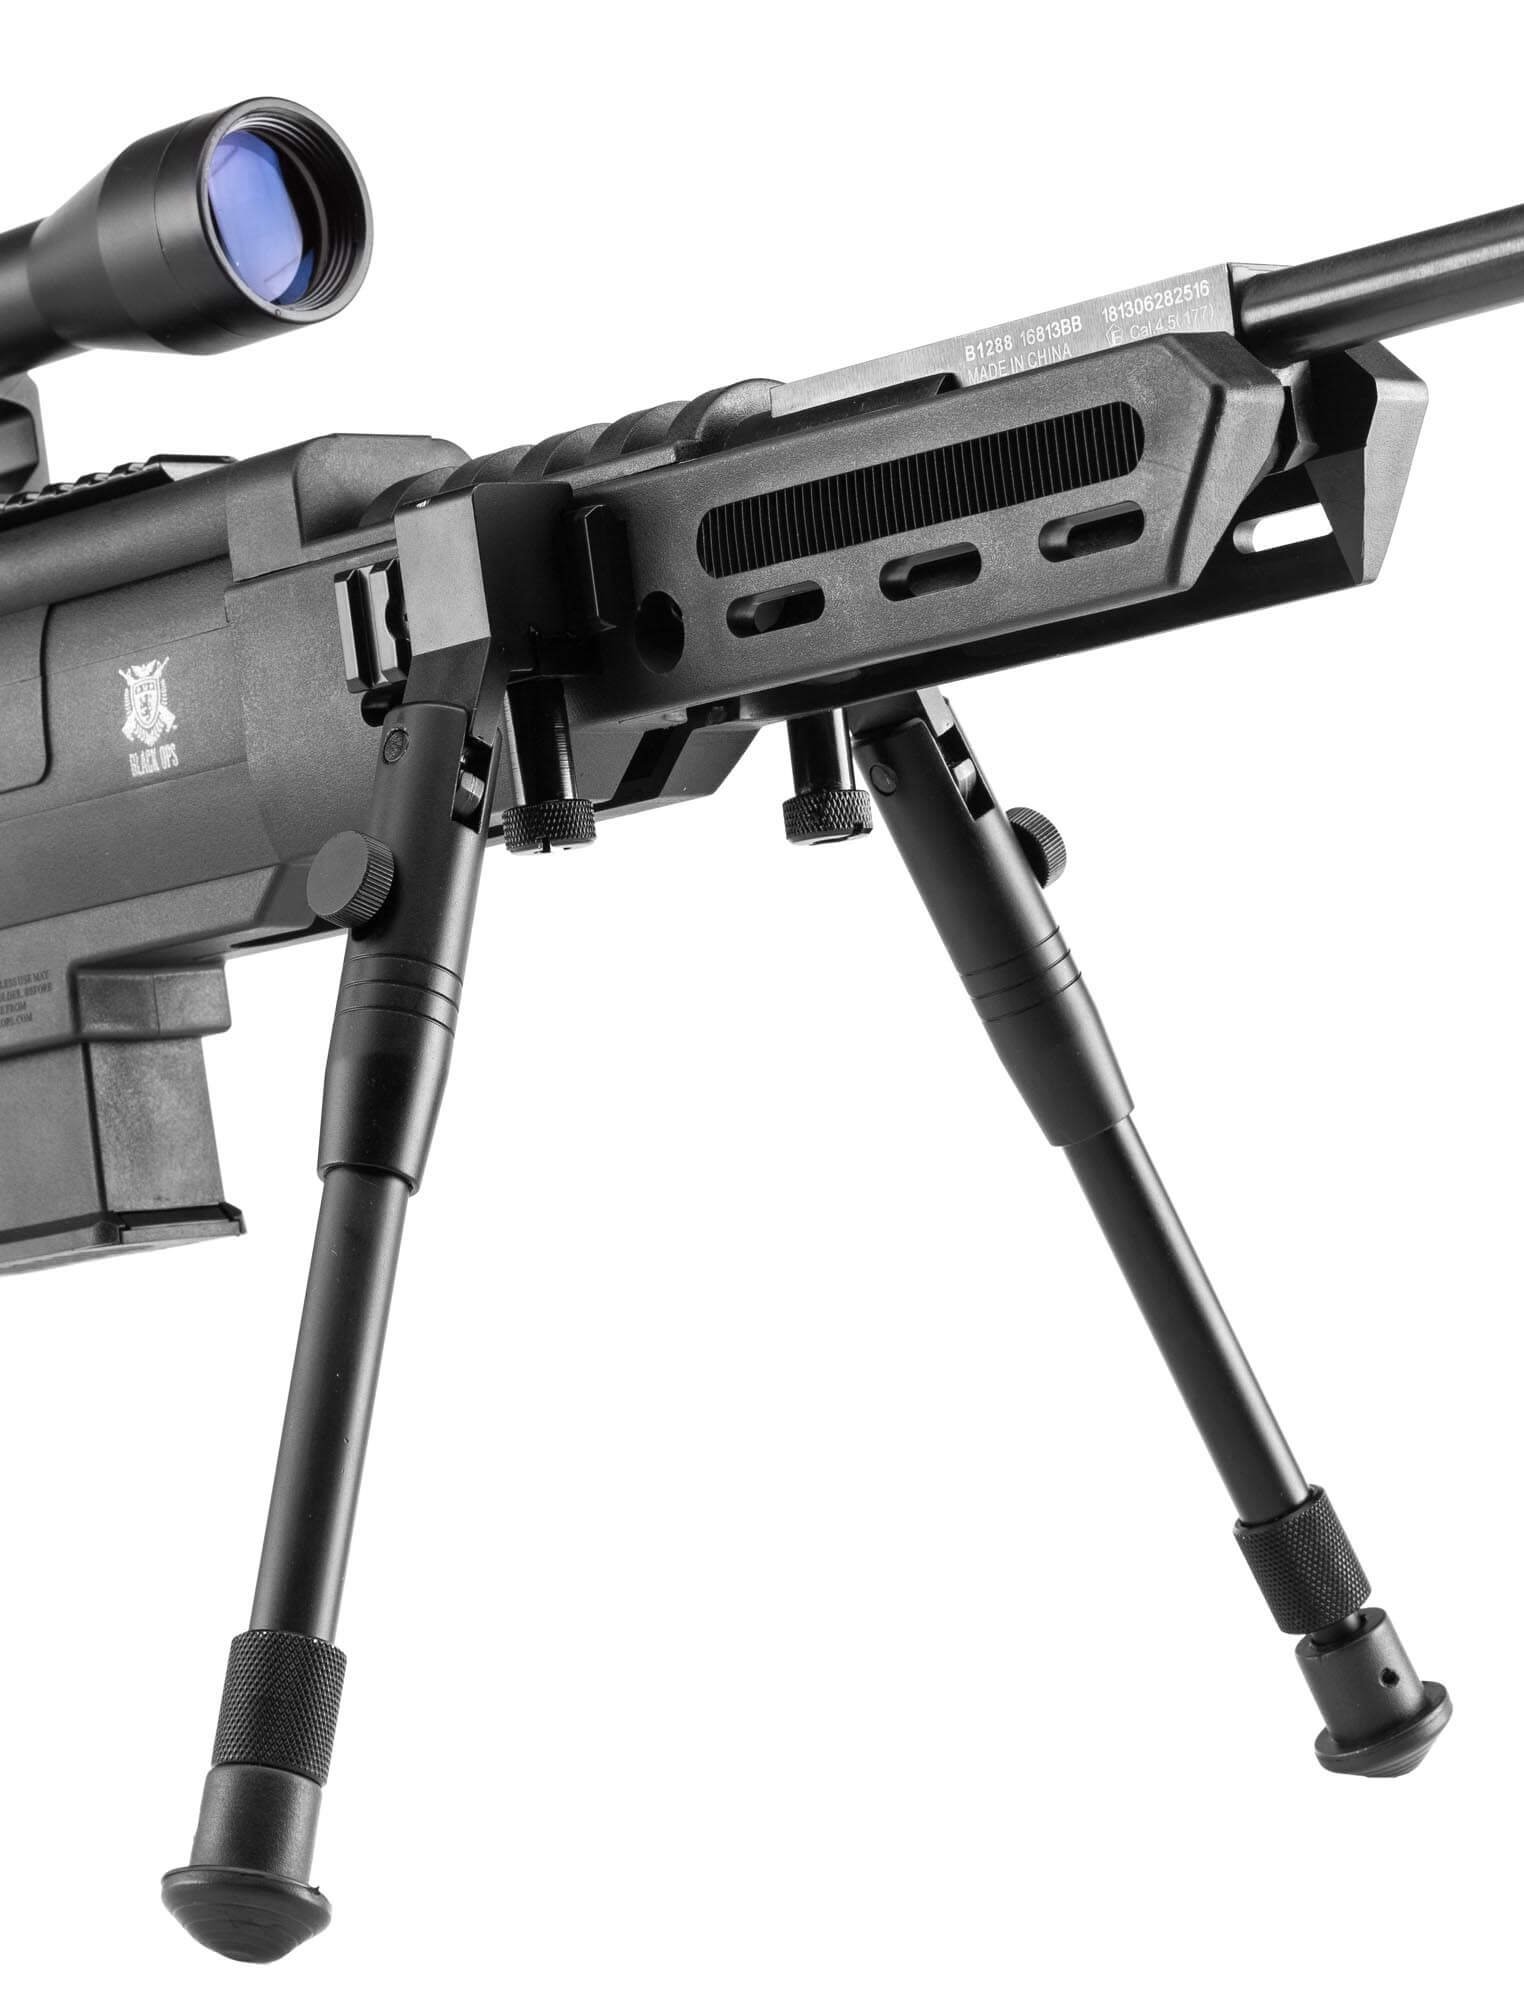 Black Ops Carabine Luftgevr 4,5 mm, Sort